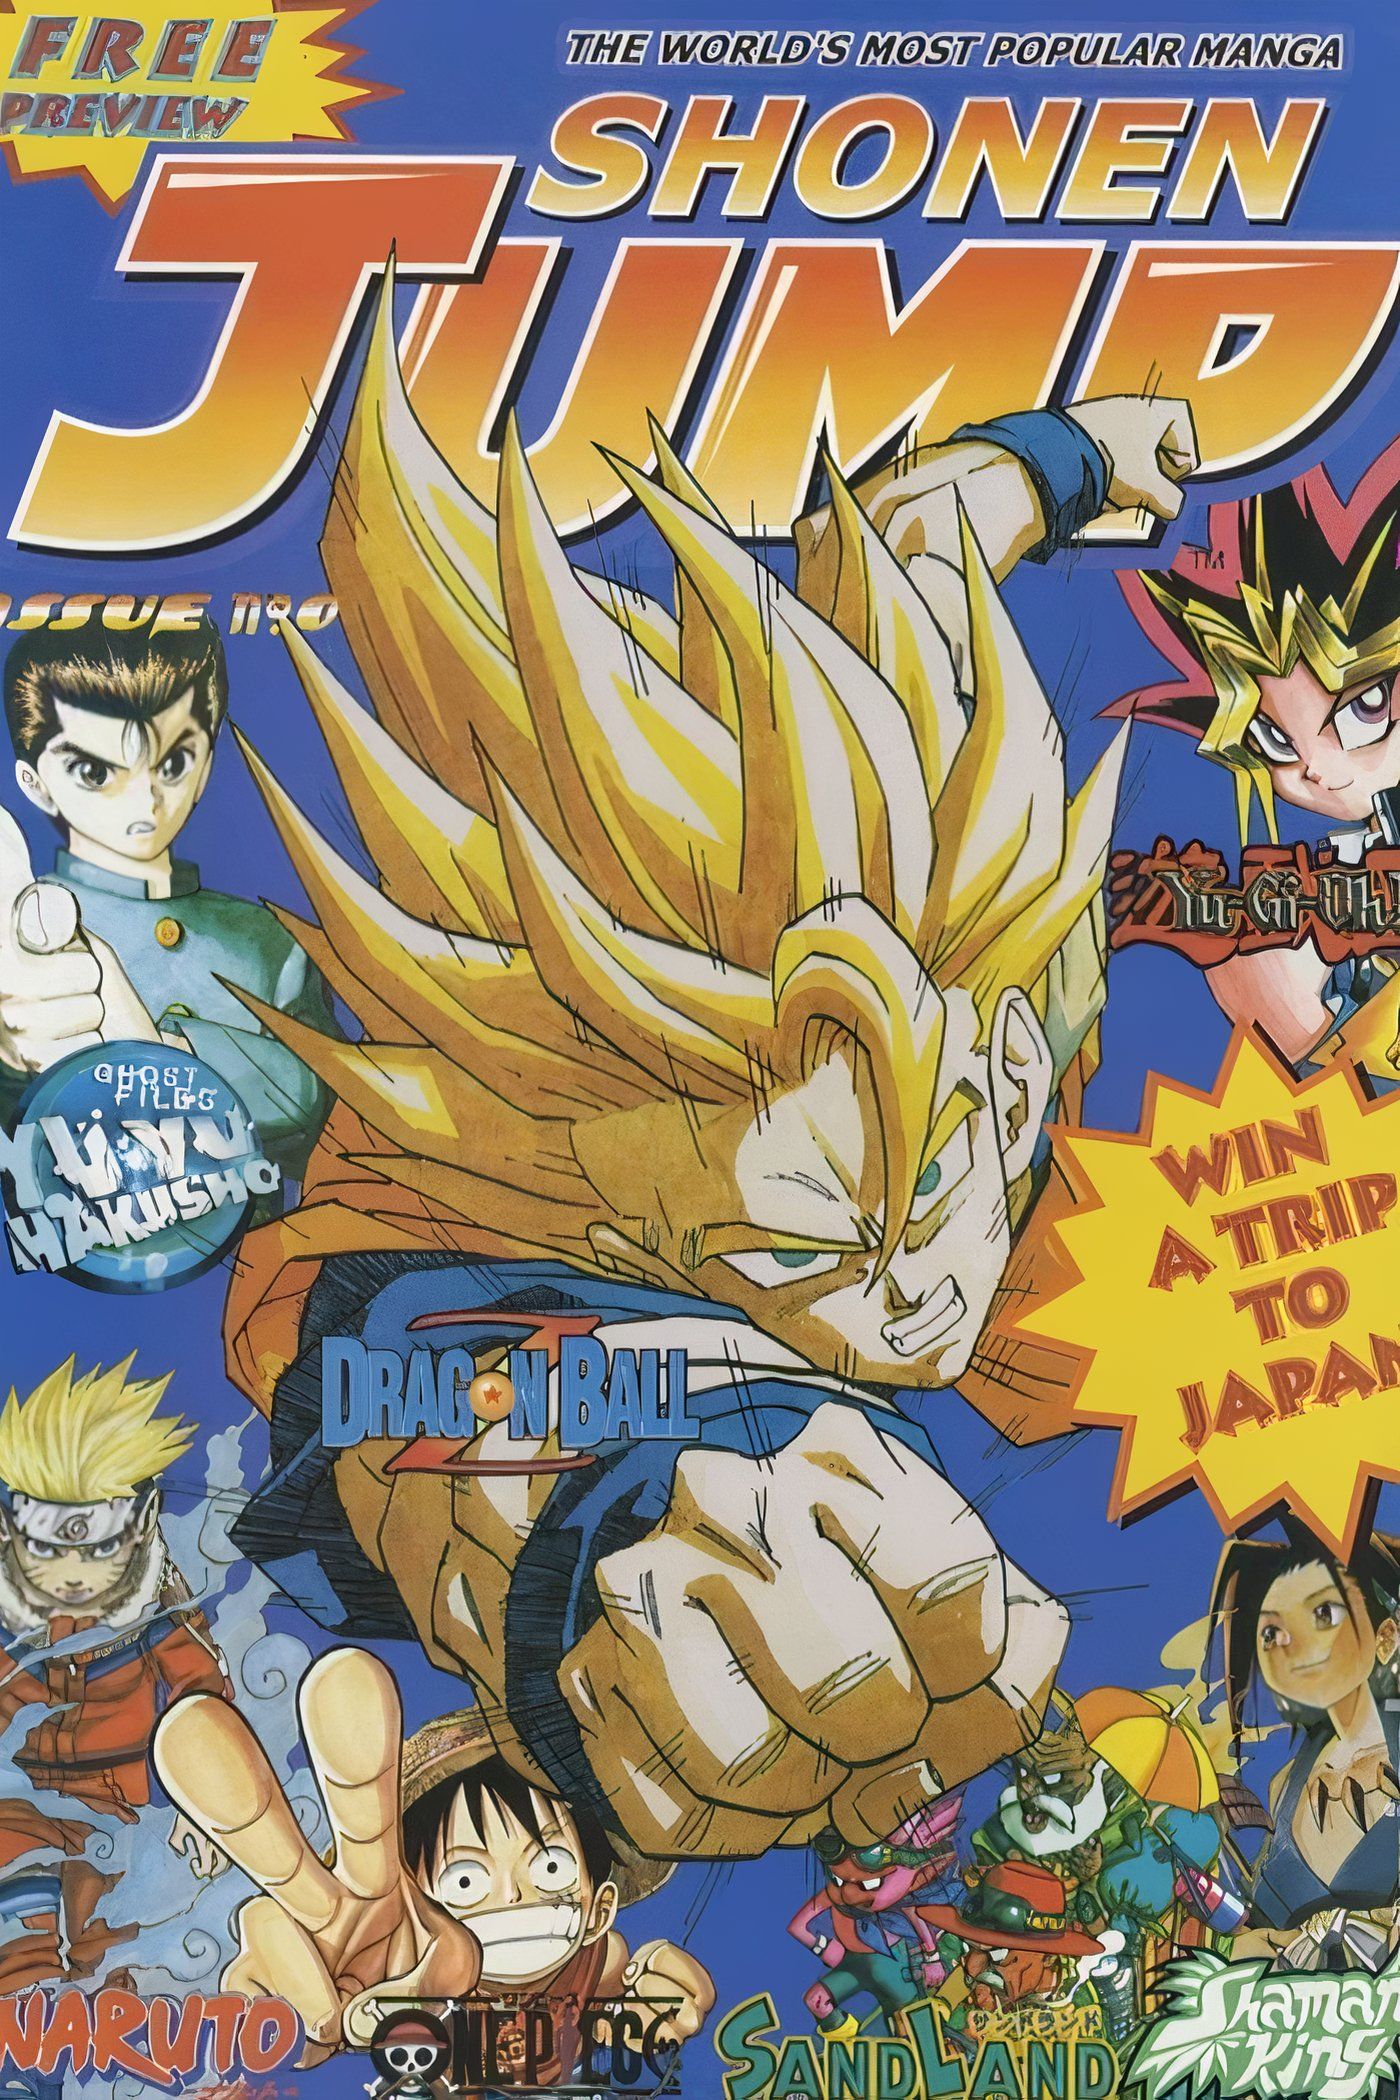 American Weekly Shonen Jump 0 com Goku, Luffy, Naruto, Yugi Muto e mais